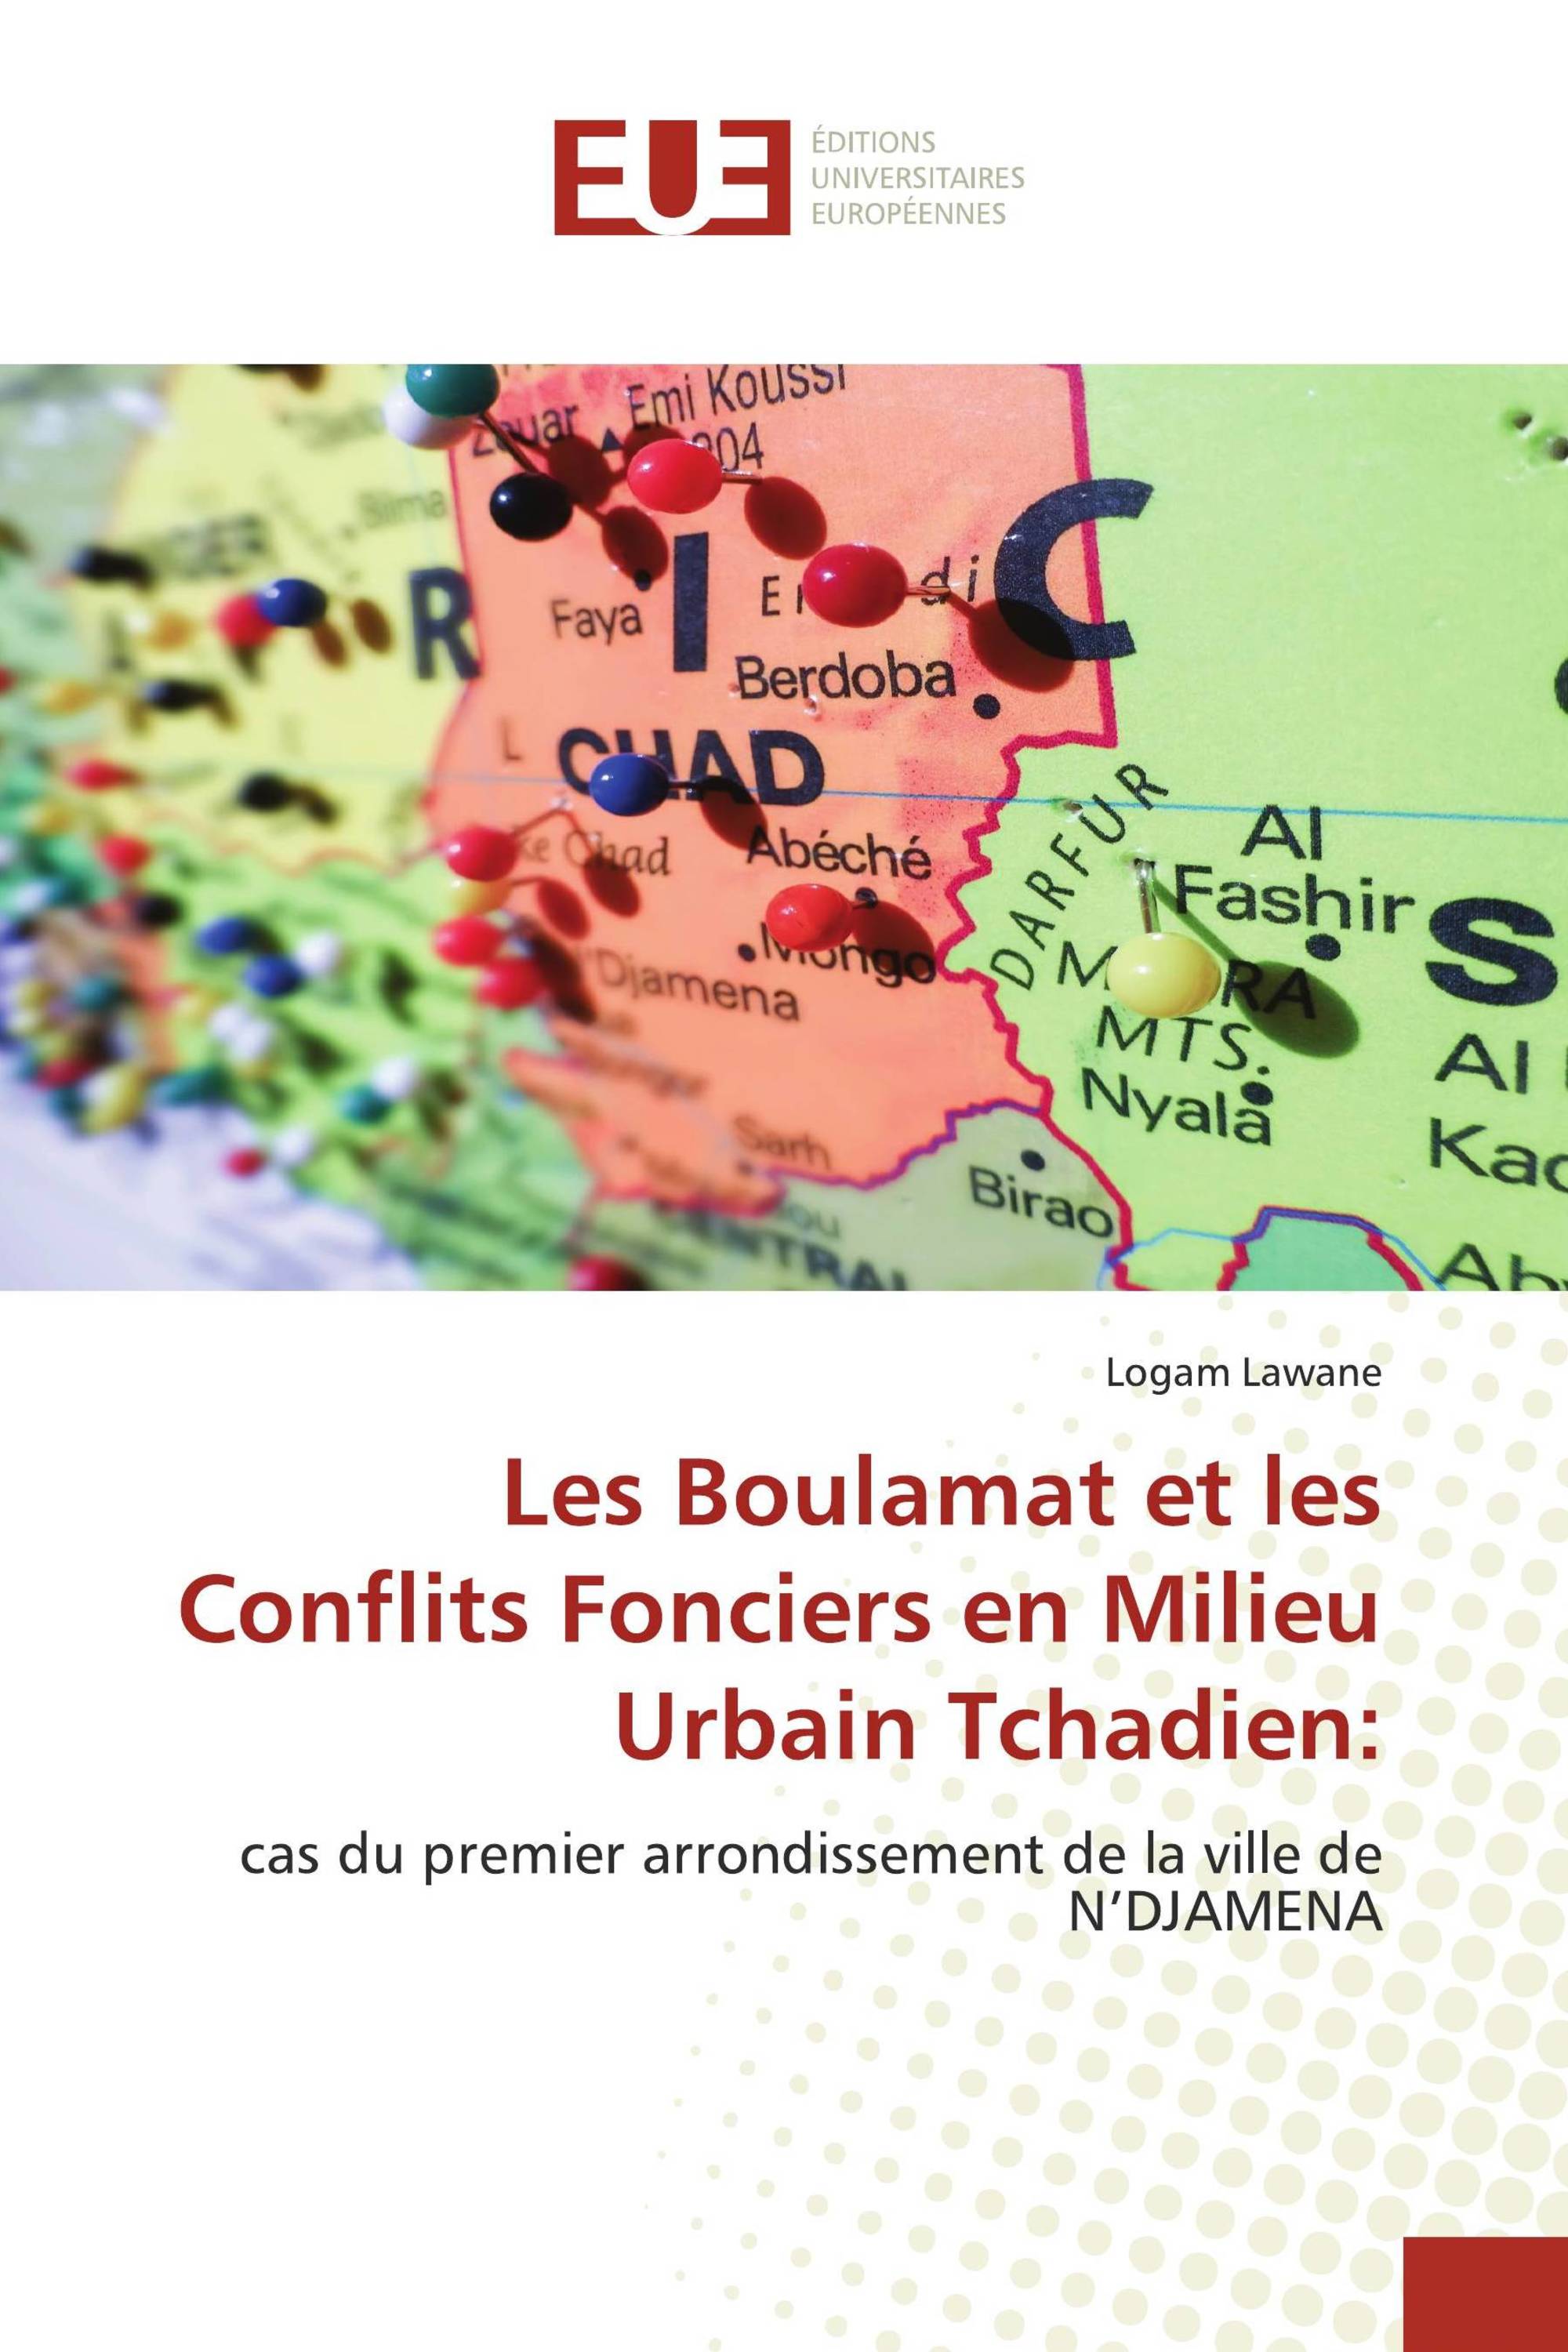 Les Boulamat et les Conflits Fonciers en Milieu Urbain Tchadien: